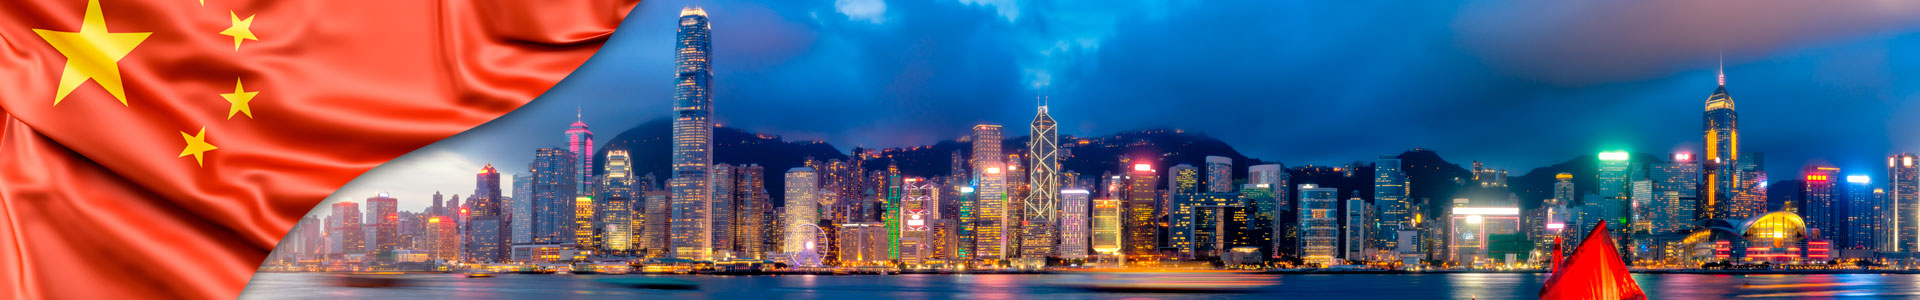 Bandera de China con panorama de la ciudad de Hong Kong con velero turístico por la noche.